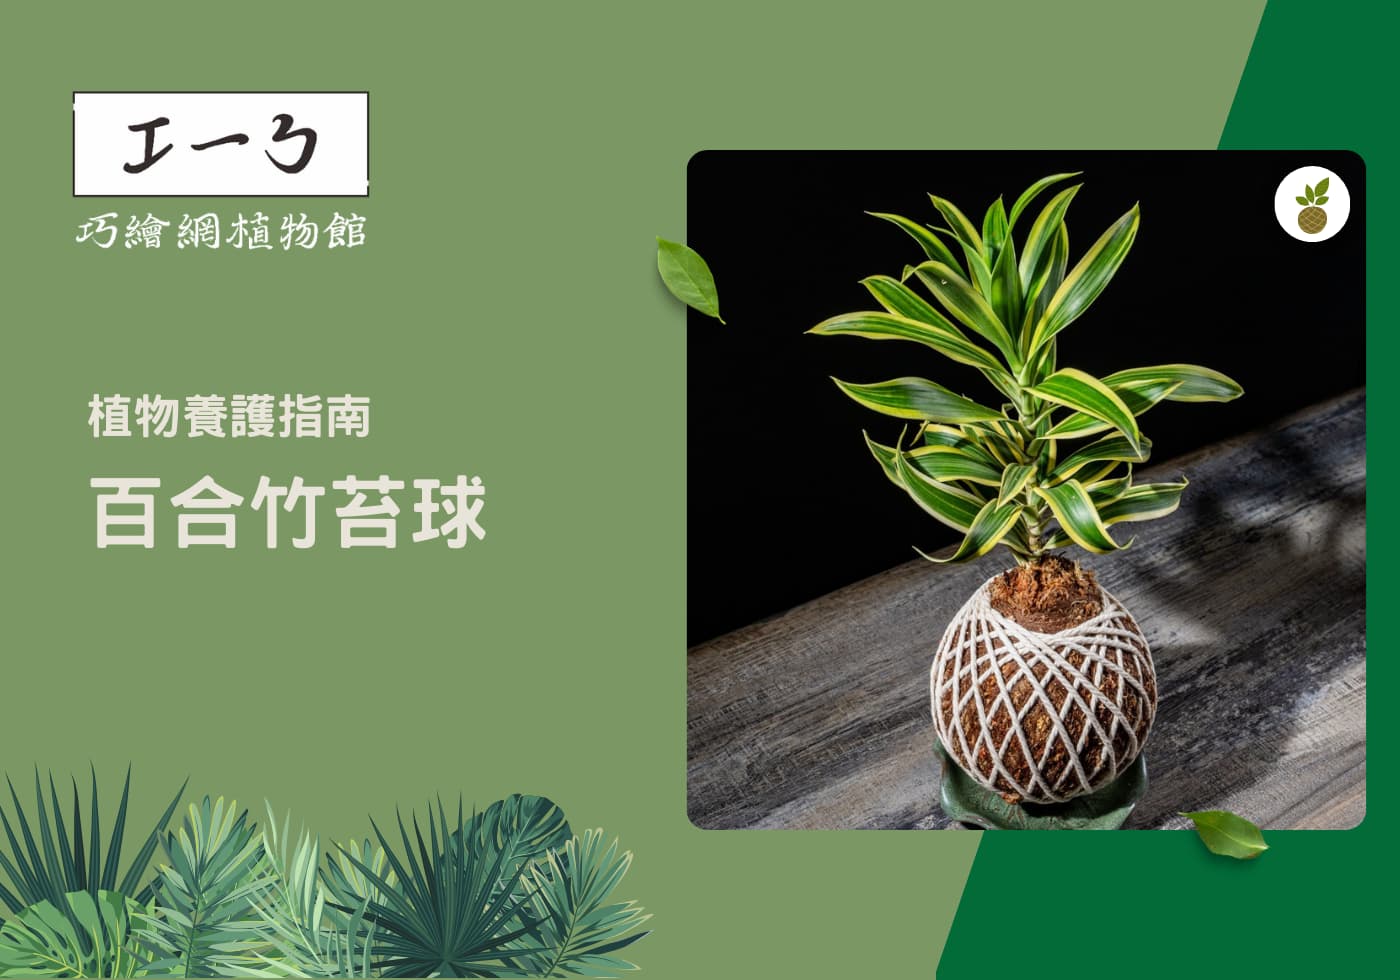 您目前正在查看 室內綠化新選擇：如何照顧您的百合竹苔球